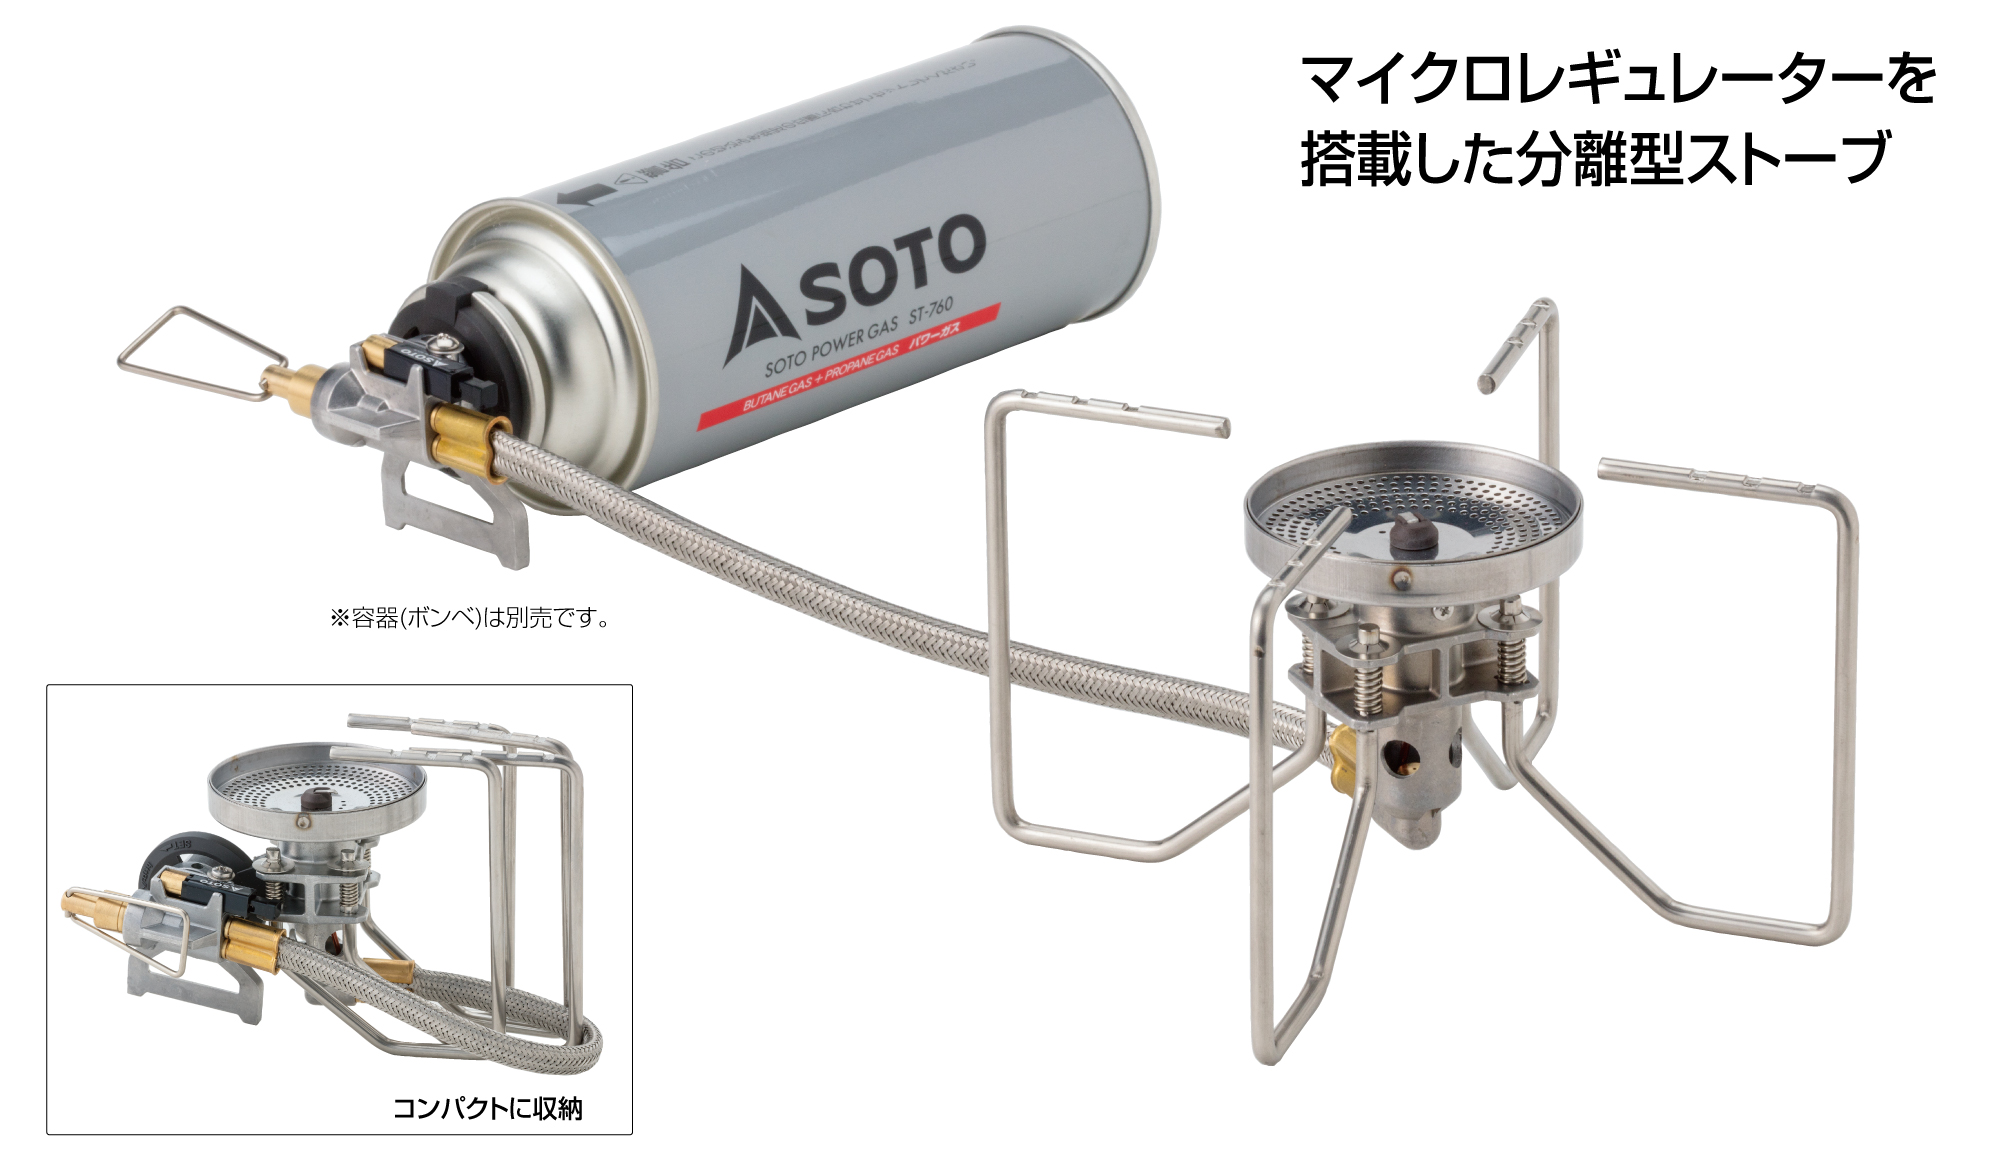 SOTOレギュレーターストーブST-310レビュー | 類似製品との比較および風防対策など